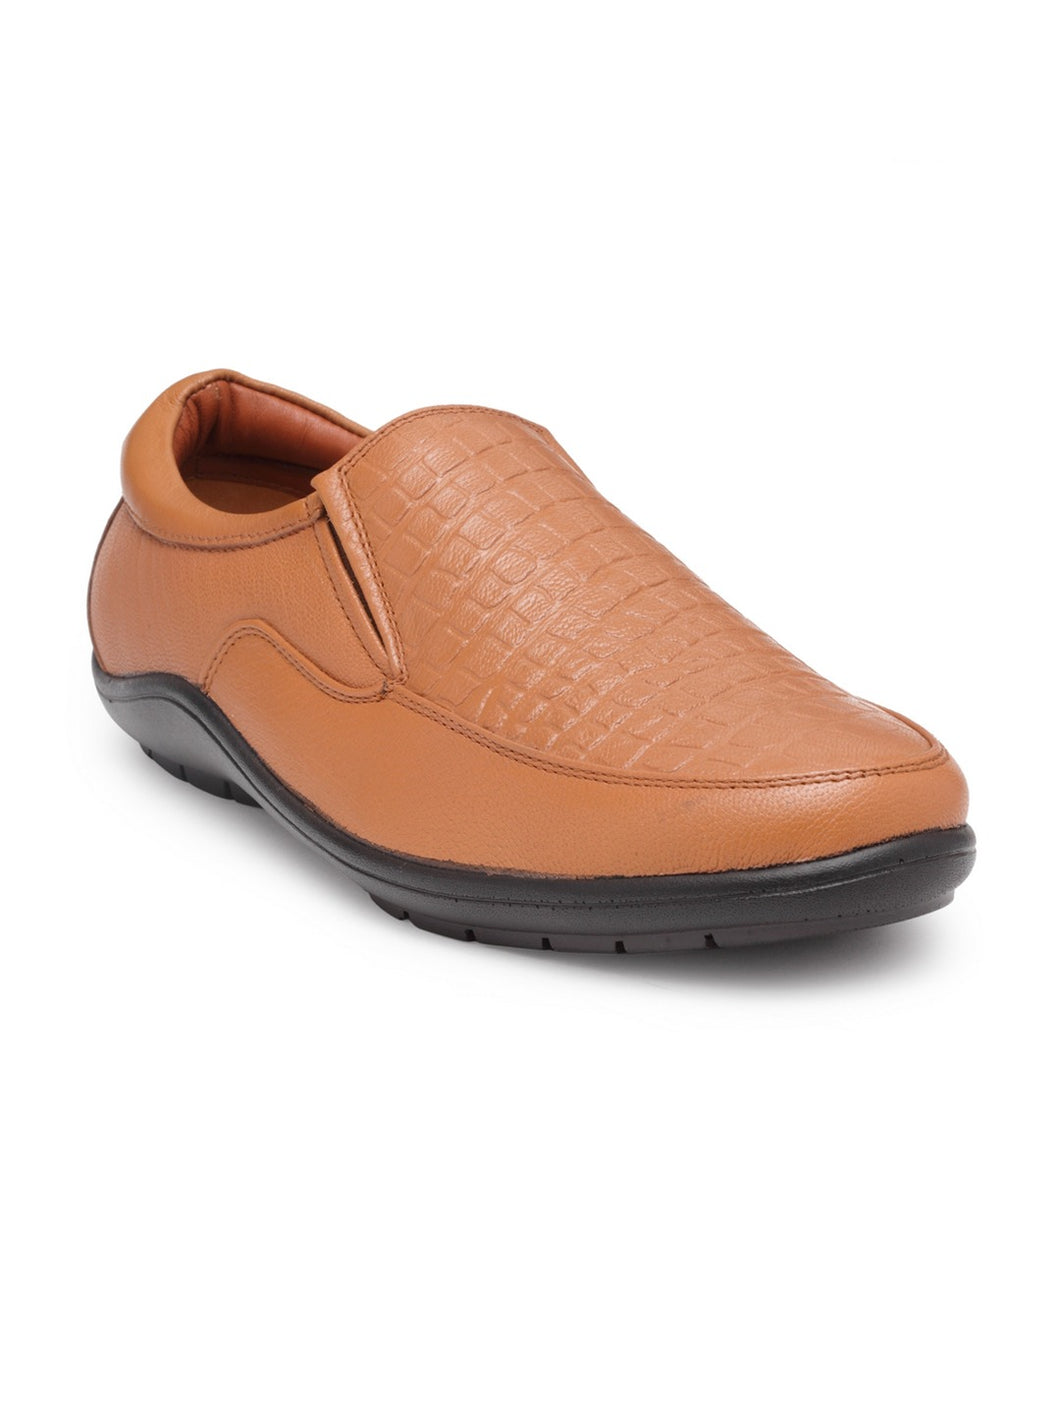 Teakwood Genuine leather Men Tan  Slip-On Sneakers